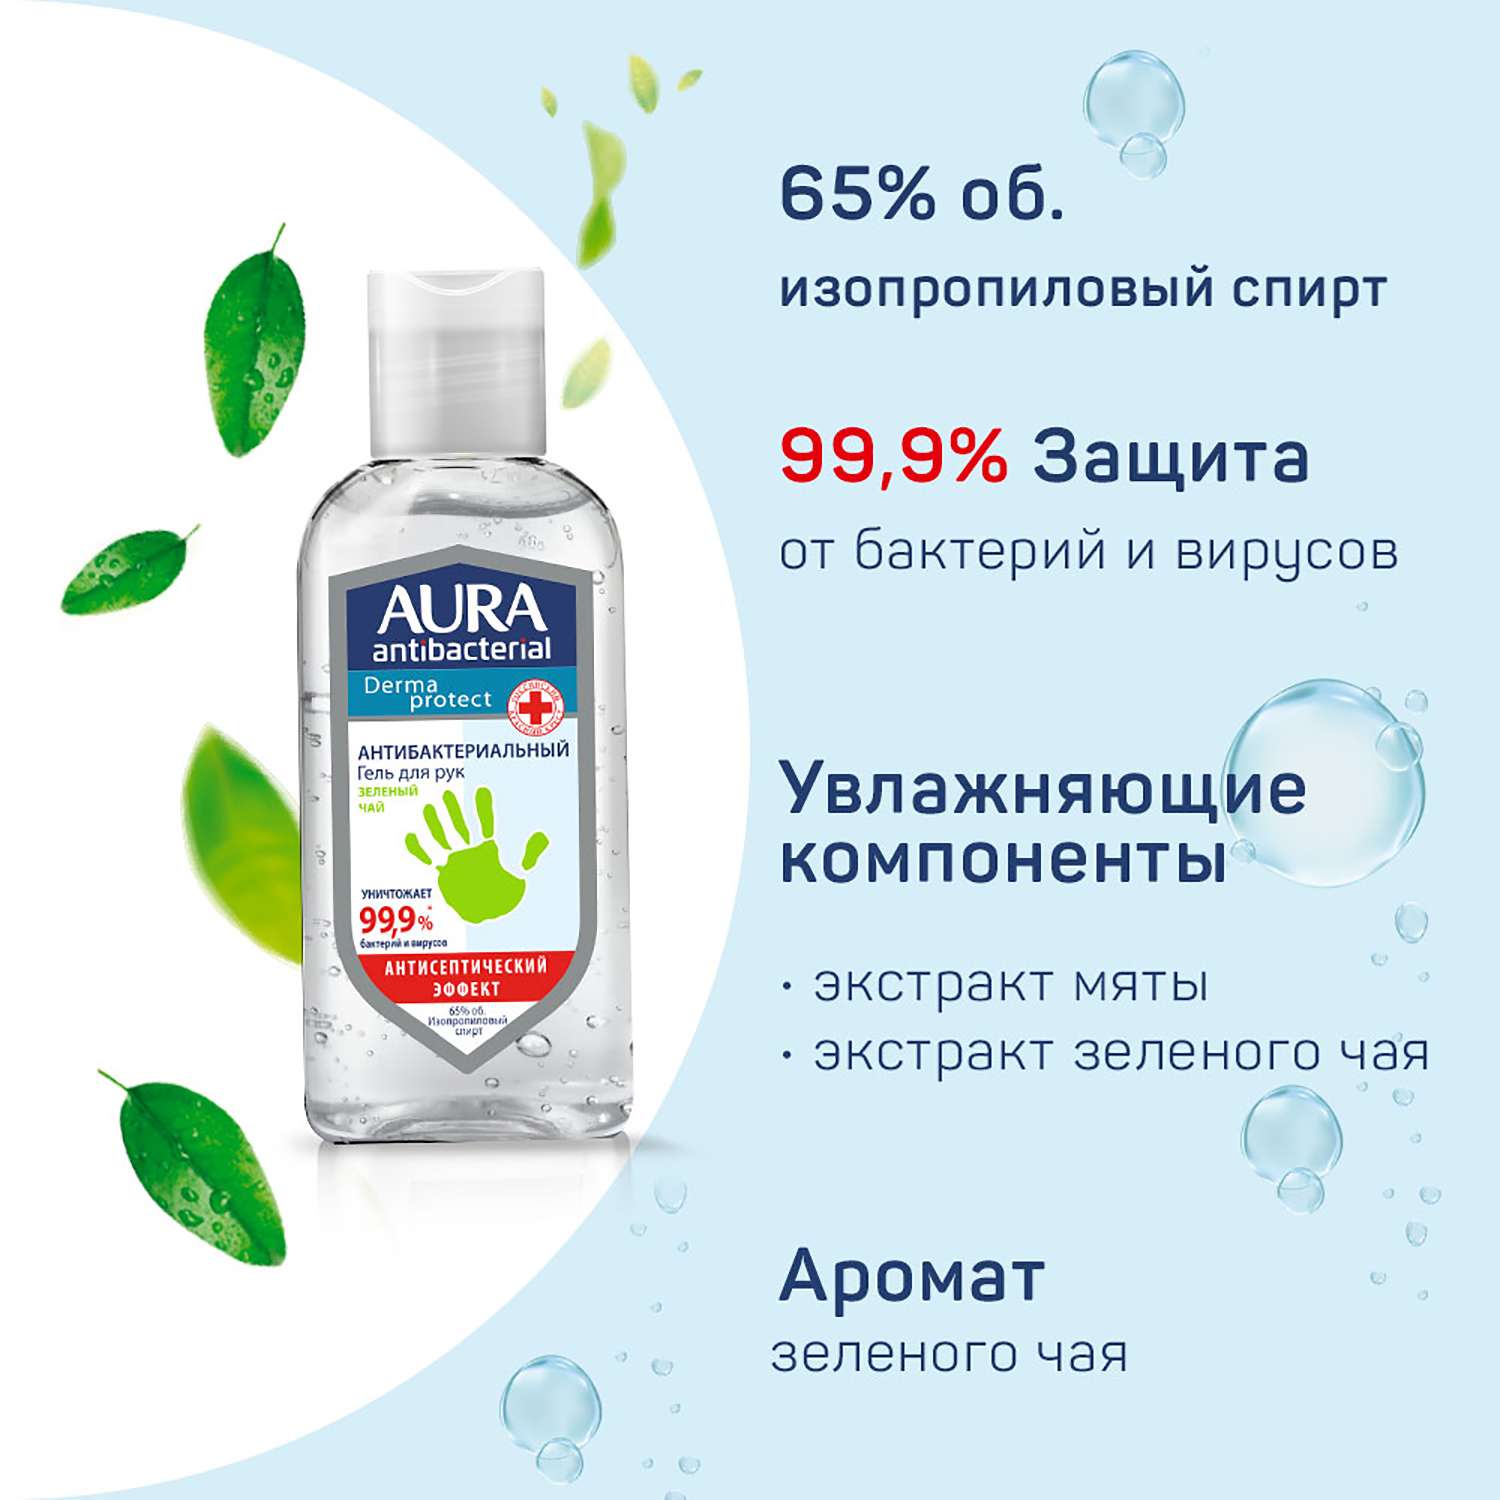 Гель для рук AURA Antibacterial Derma Protect Зеленый чай 100мл - фото 3